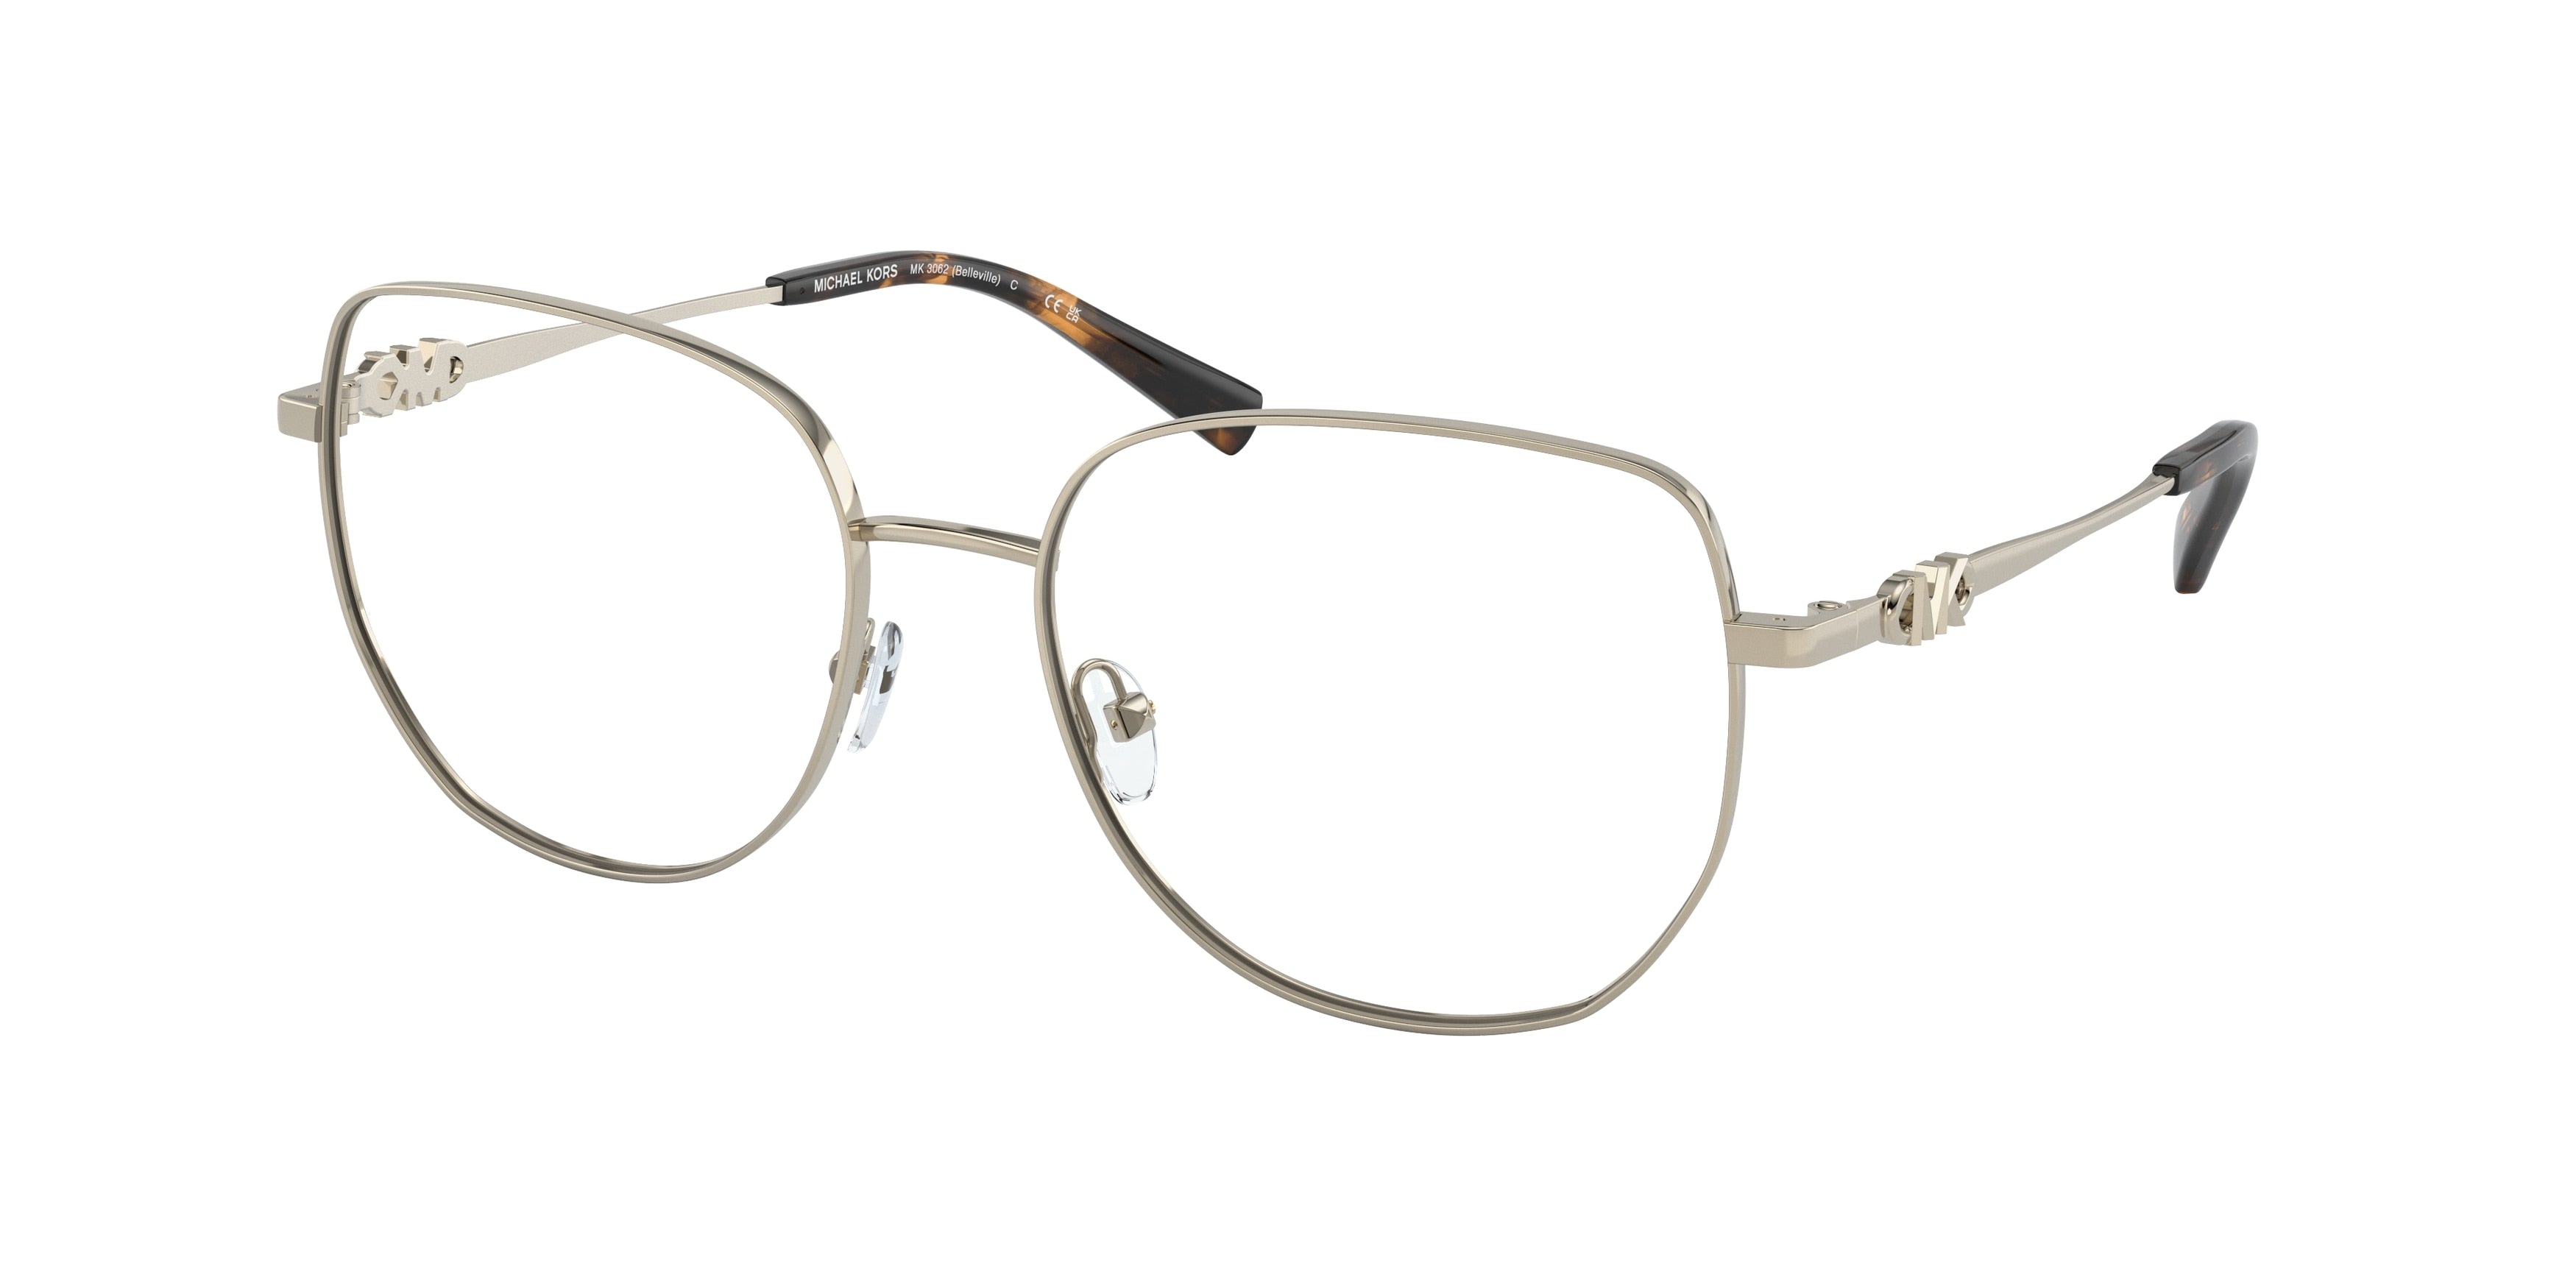 Michael Kors BELLEVILLE MK3062 Square Eyeglasses  1014-Light Gold 56-140-17 - Color Map Gold